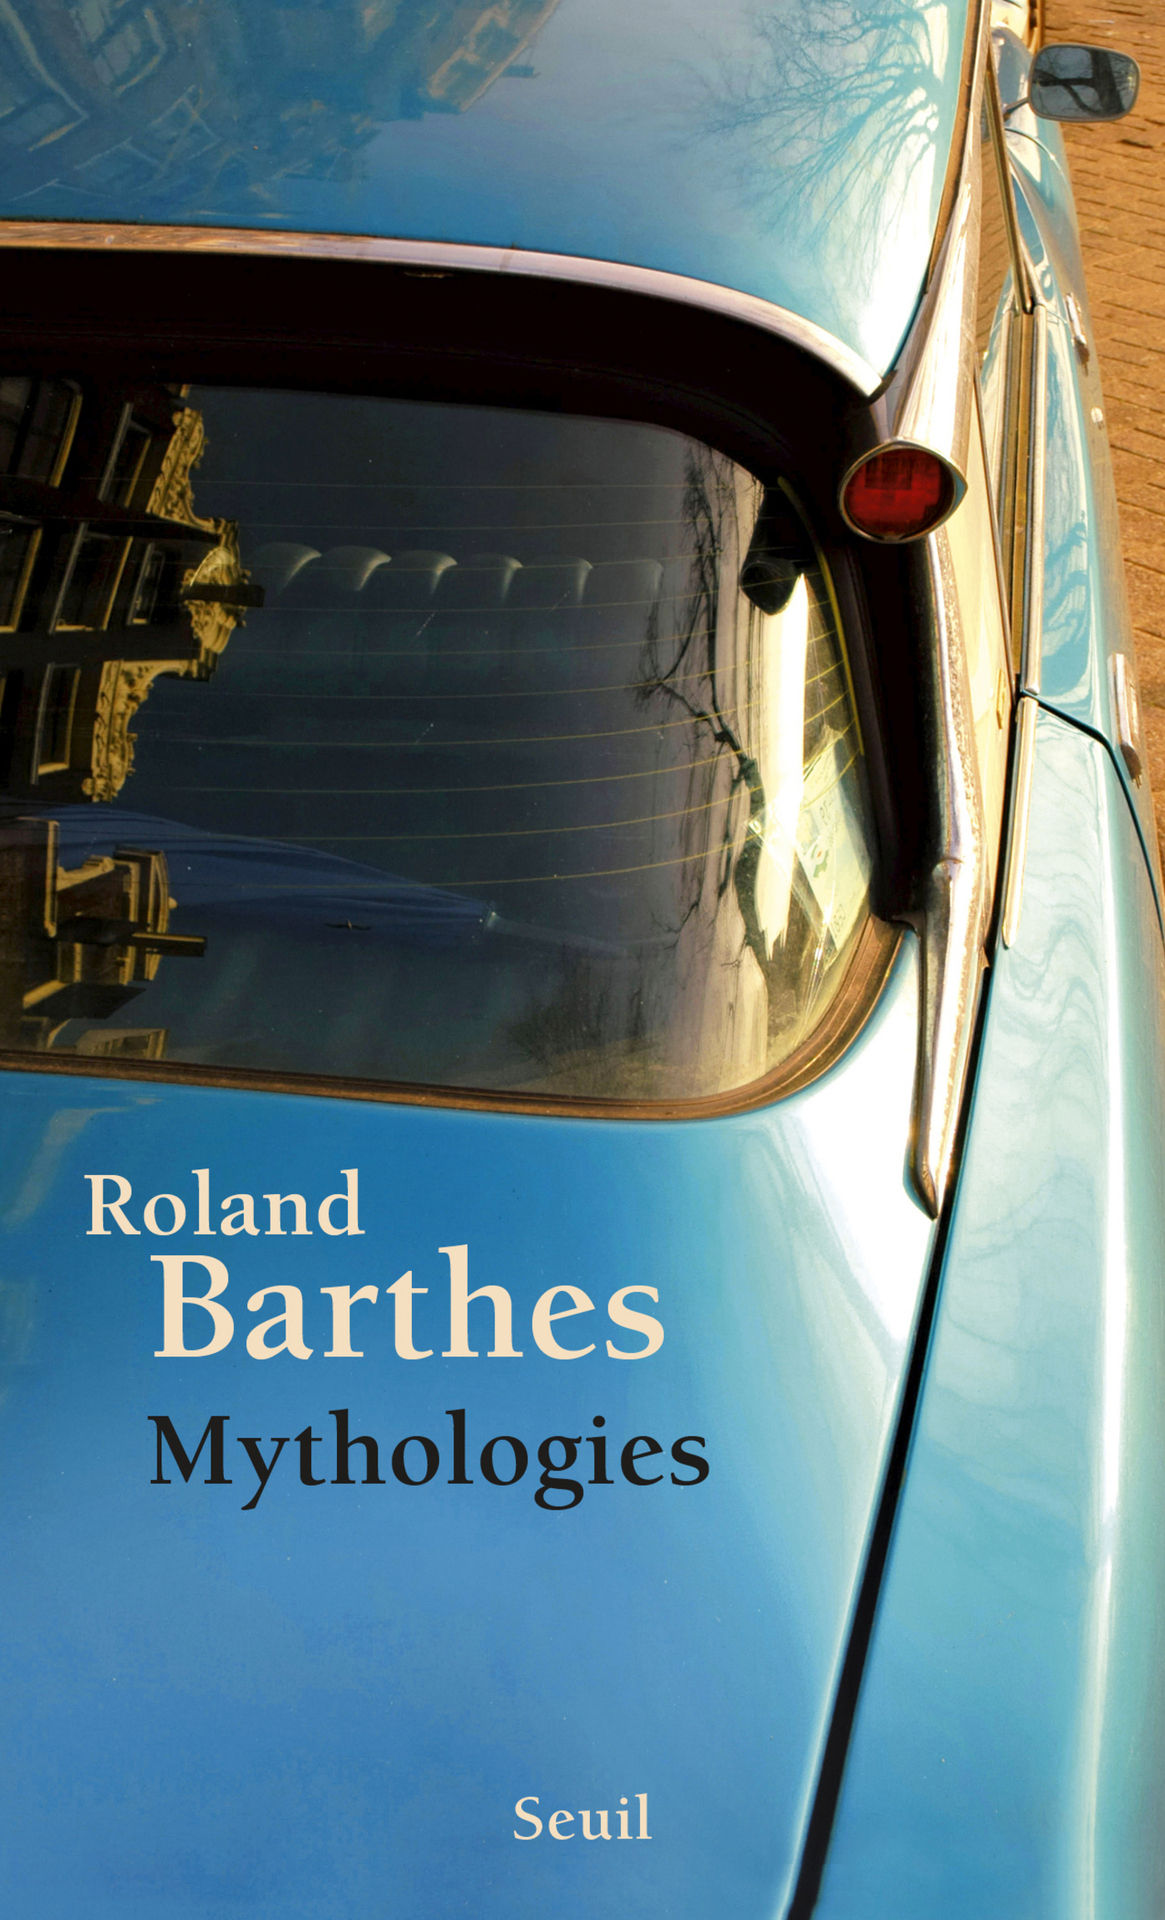 AND - Mythologies - Roland Barthes